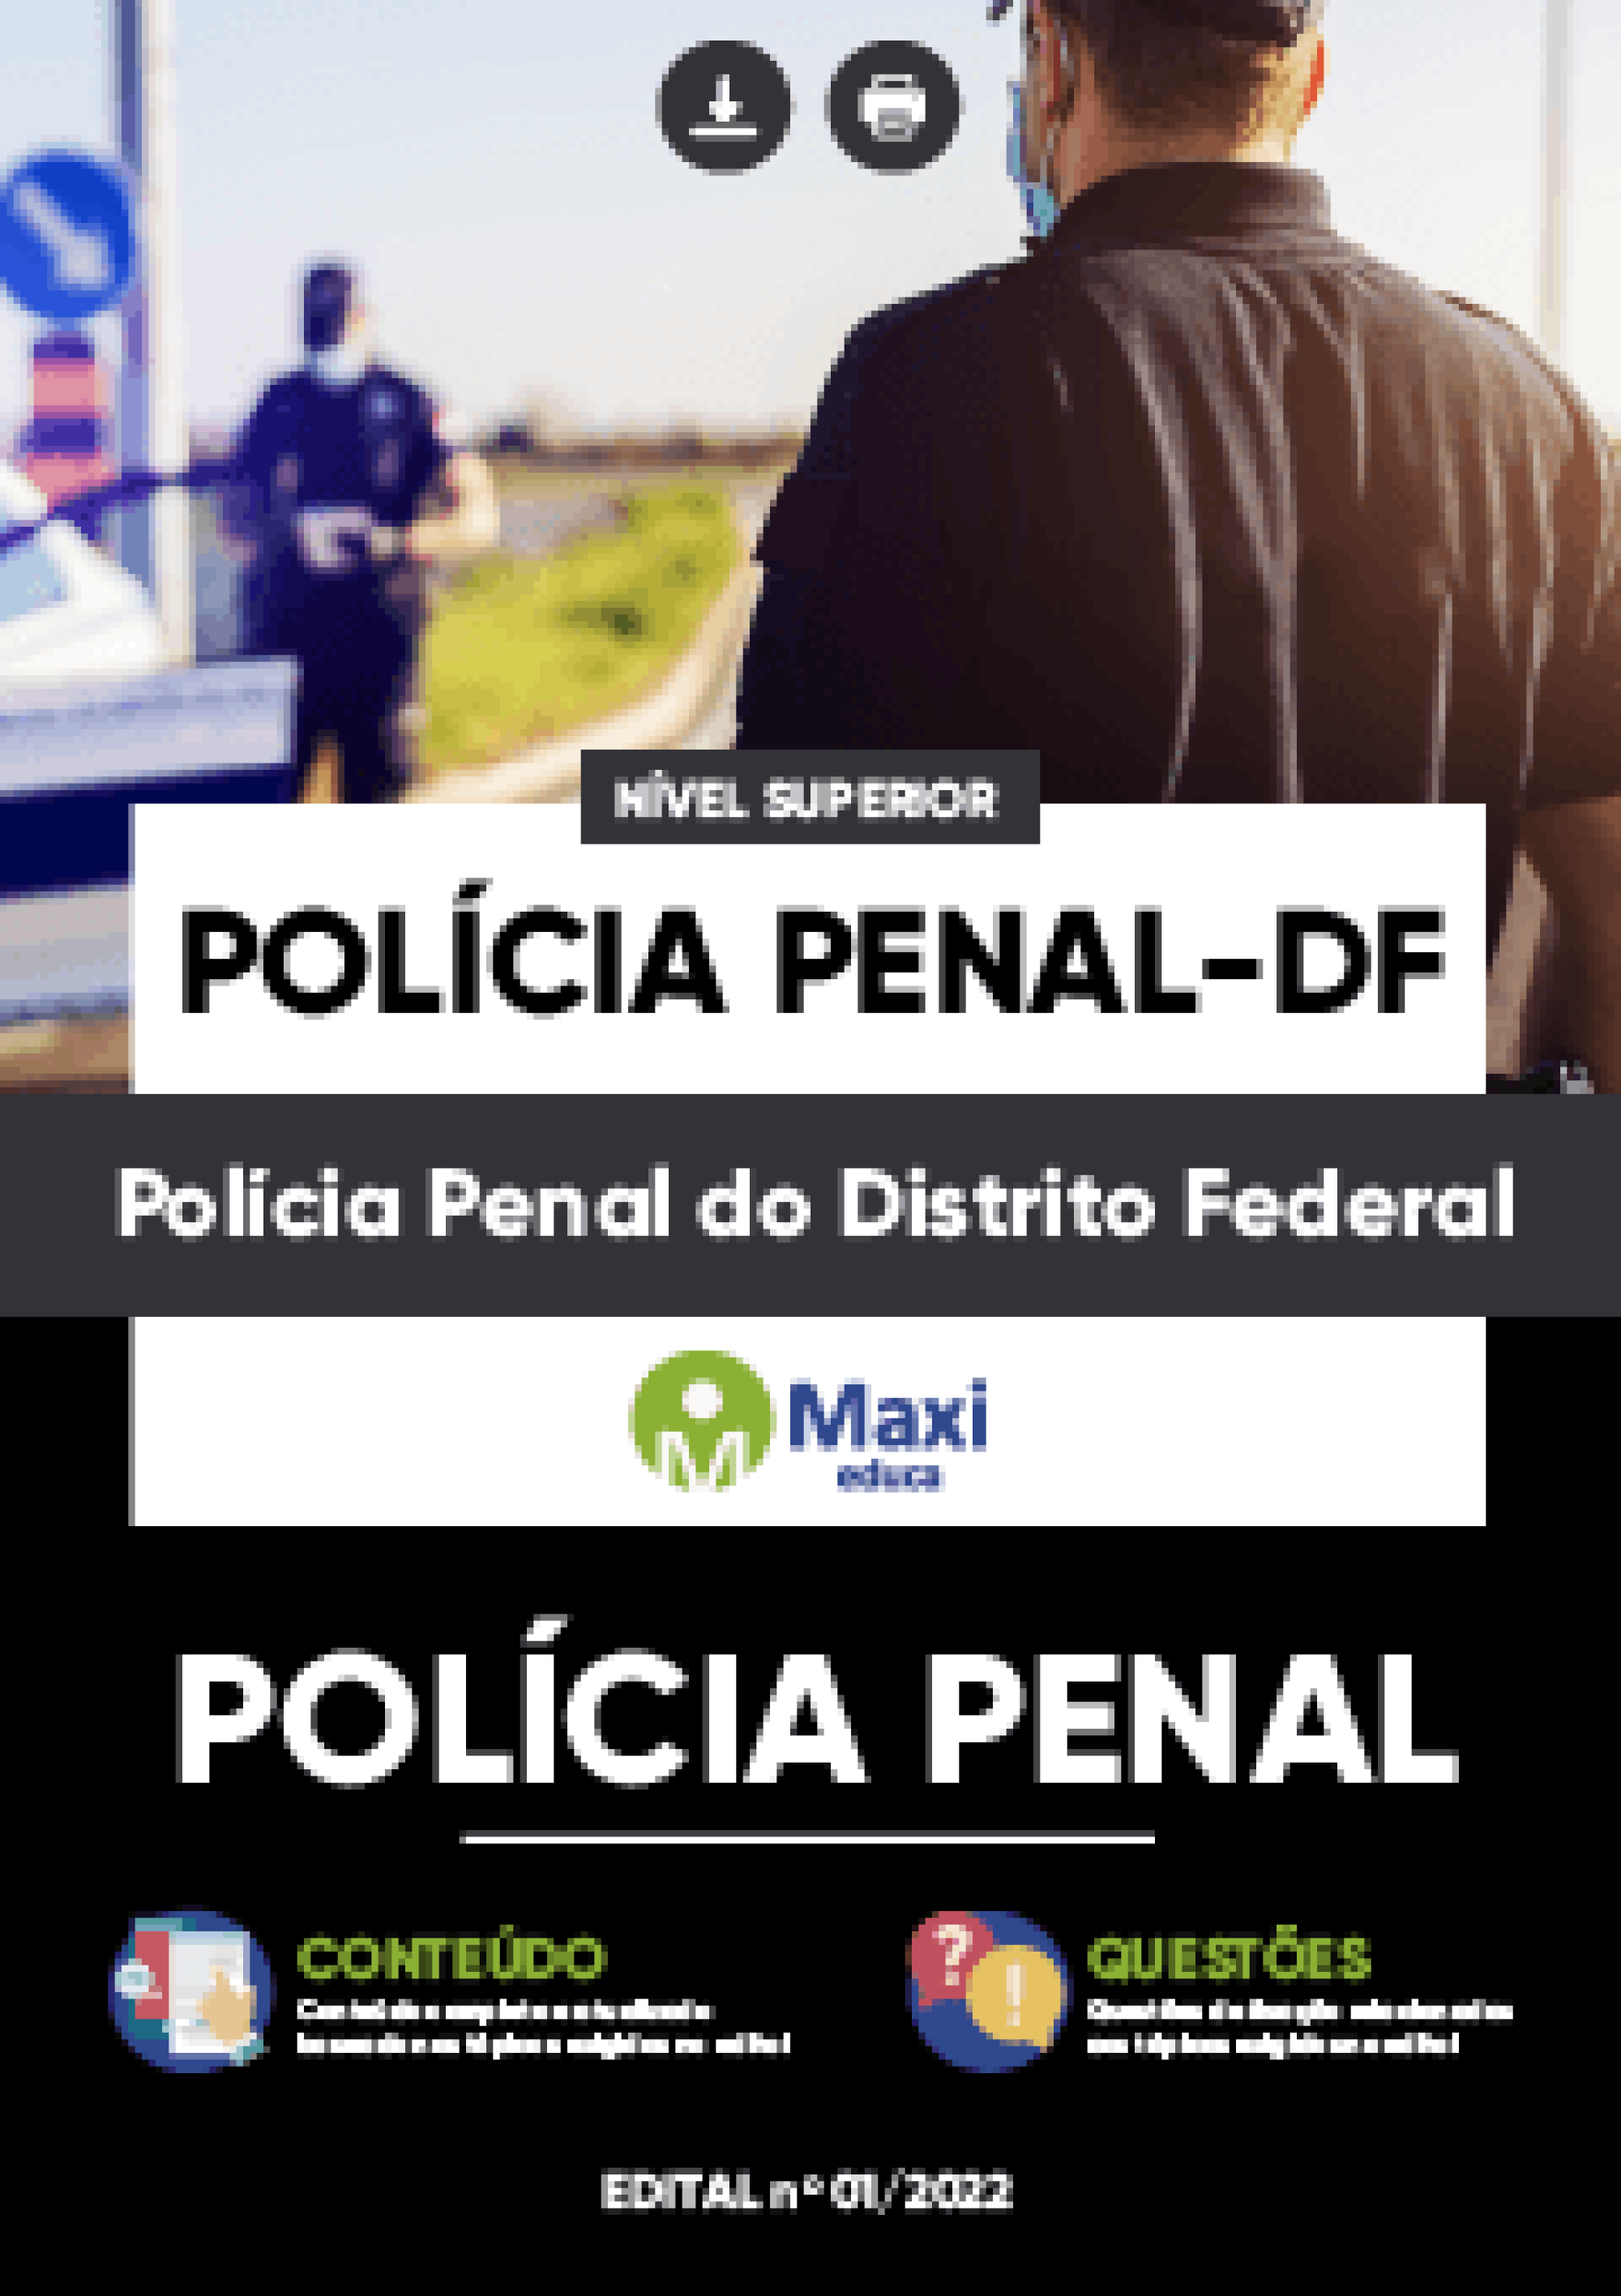 Apostila Digital em PDF da Polícia Penal-DF